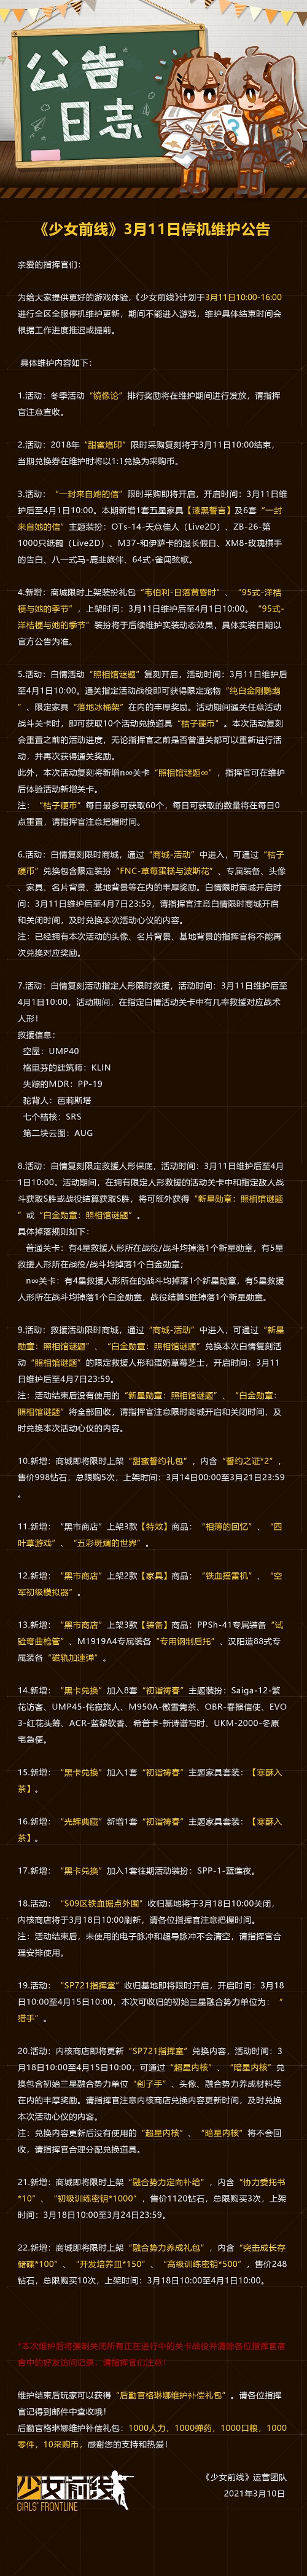 少女前线3月11日维护公告 汉阳造专属即将上线